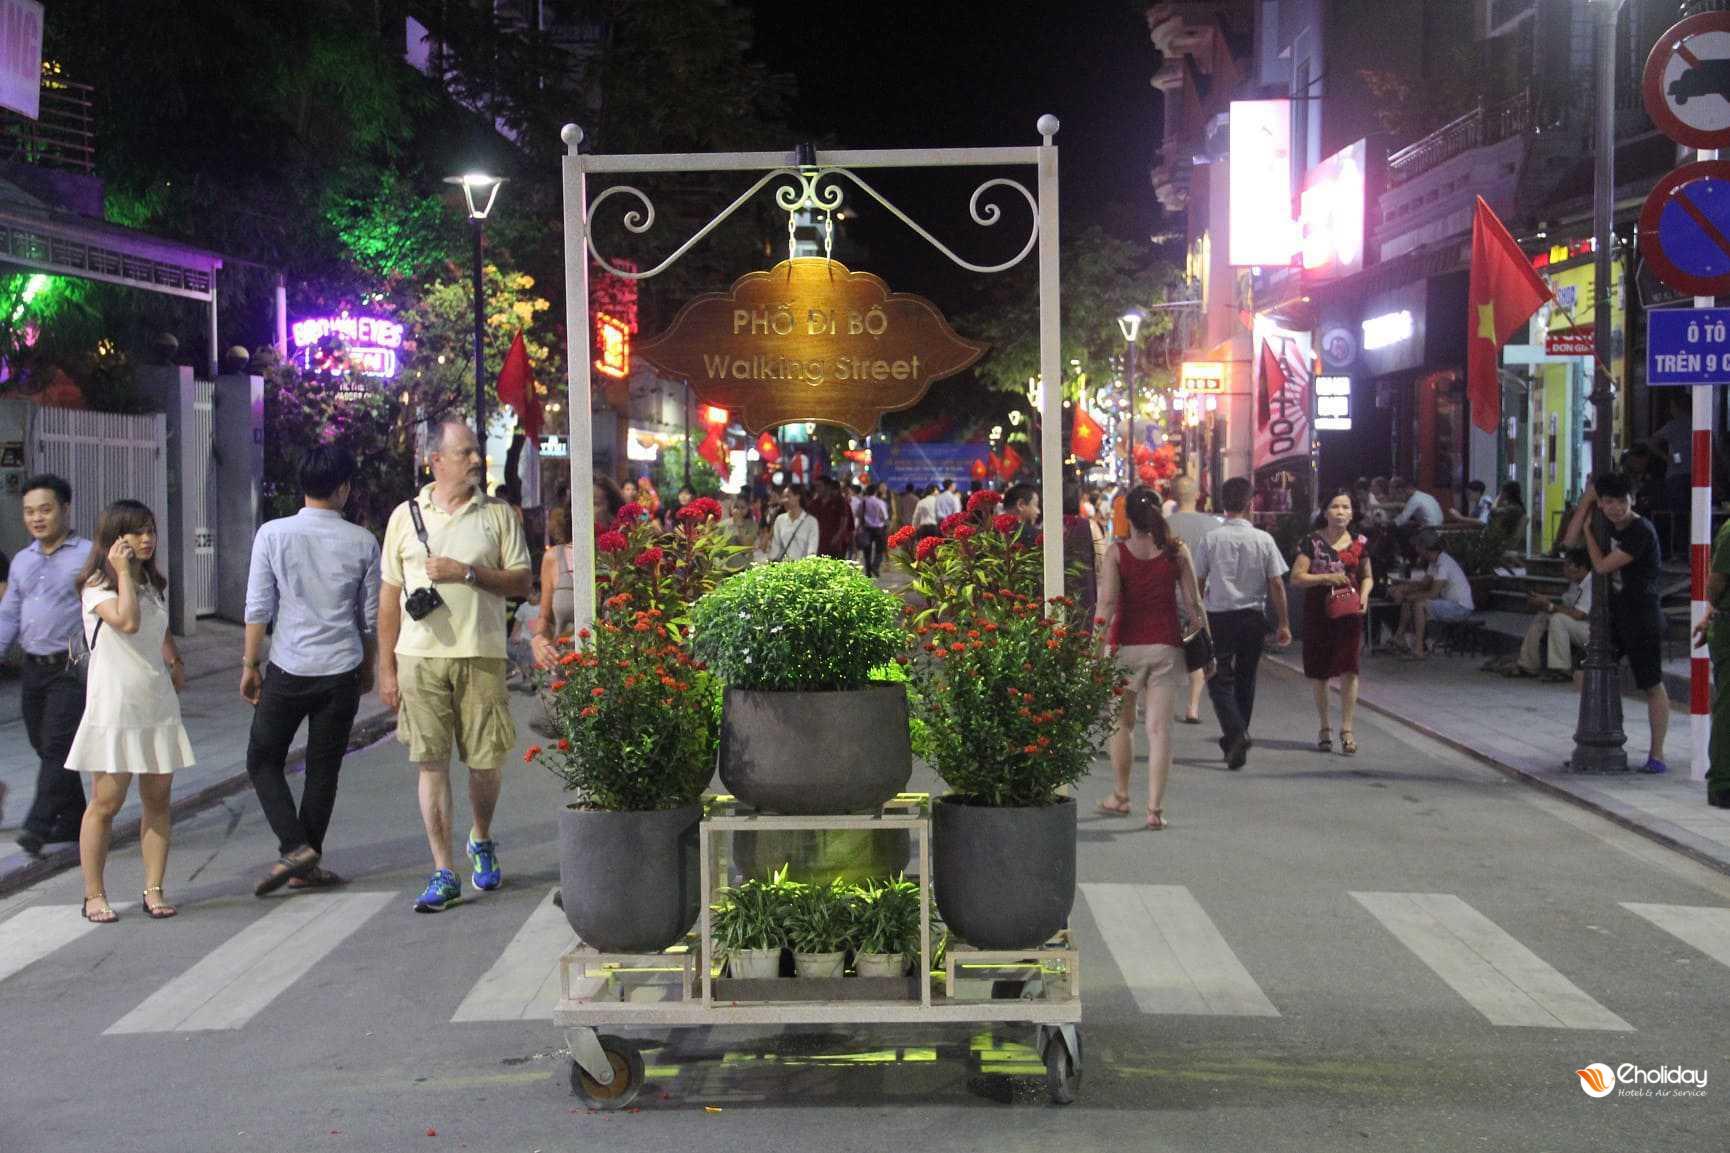 Phố đi bộ Nguyễn Đình Chiểu Huế - không khí về đêm sôi động tại Cố Đô